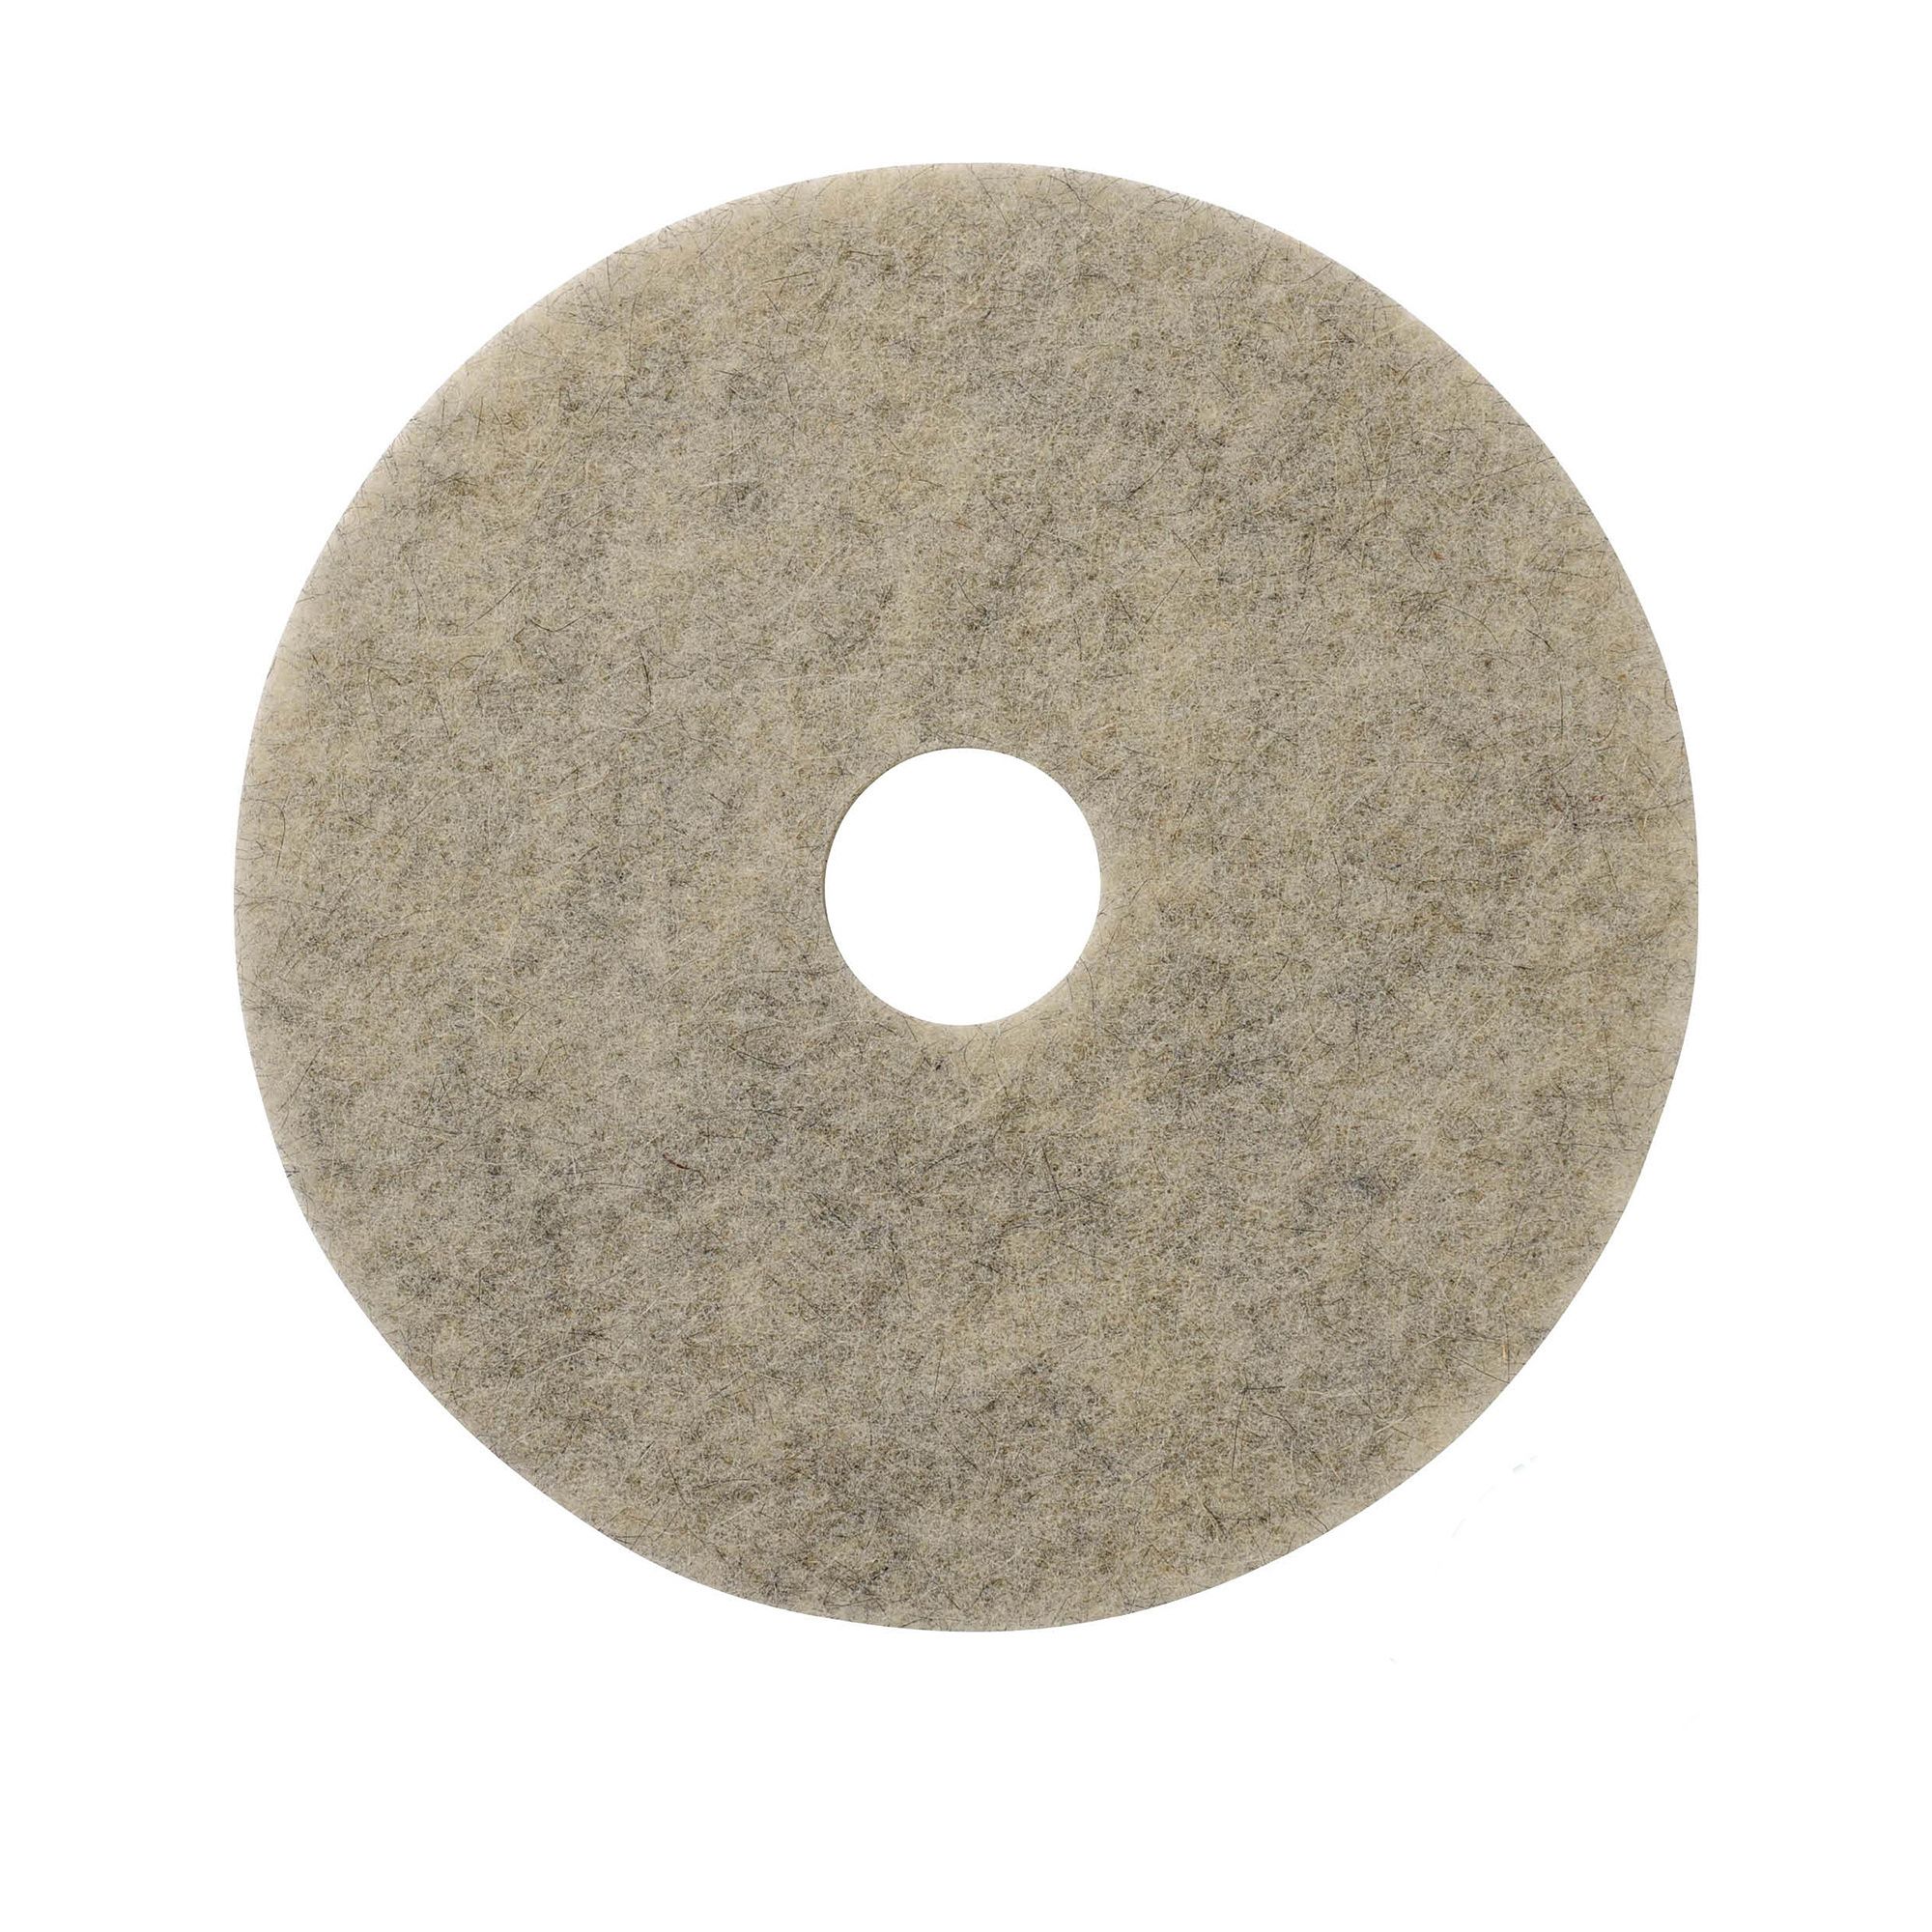 NuPad grijs (polijsten), per 5 stuks, 14 inch / 355 mm